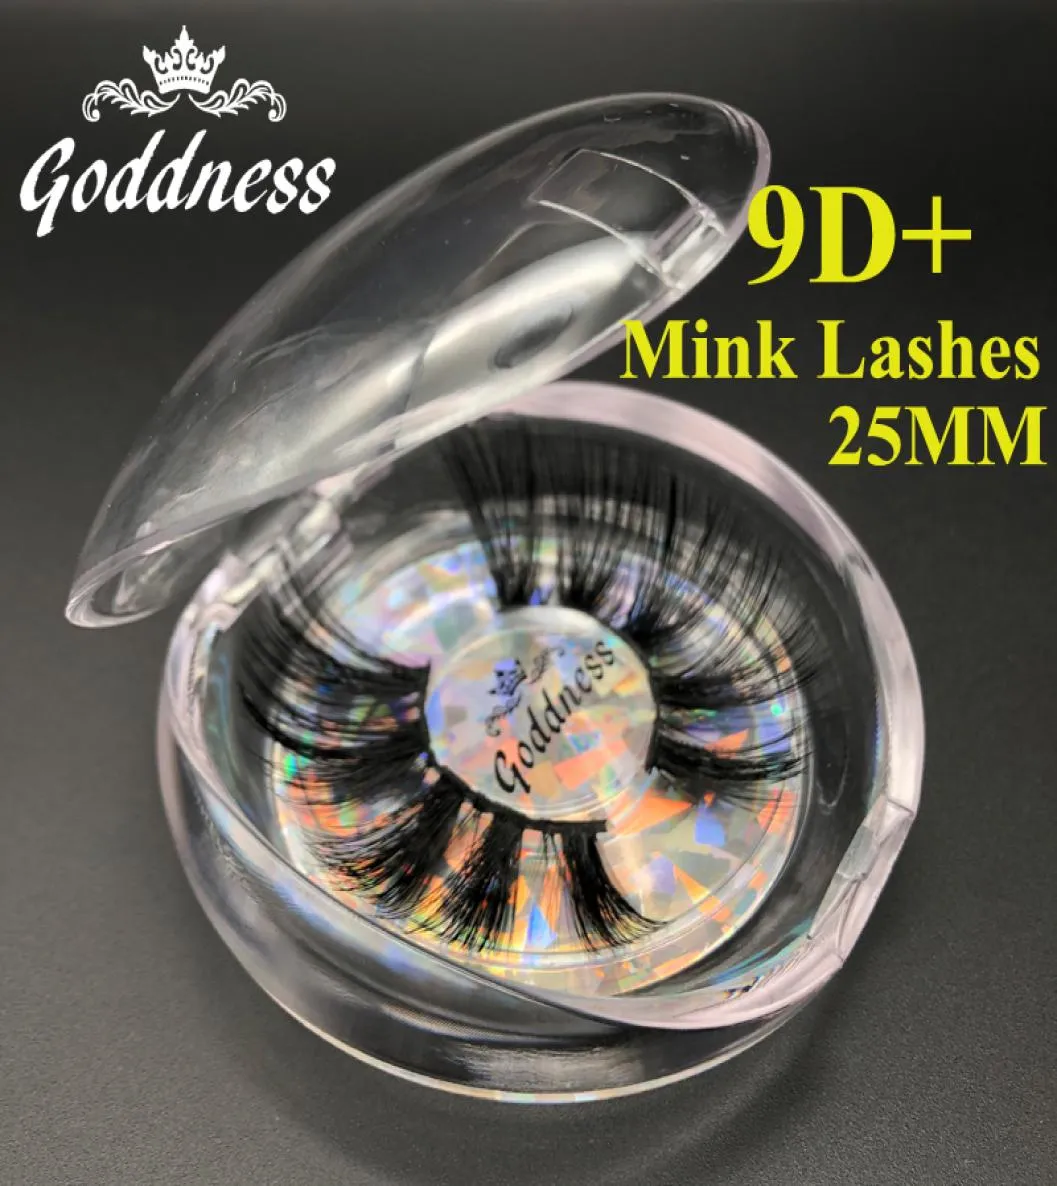 25mm 100 3DミンクヘアのつるまつげマルチレイヤーCrisscross Wispies Fluffyまつげラッシュエクステンションアイメイクツール4812385